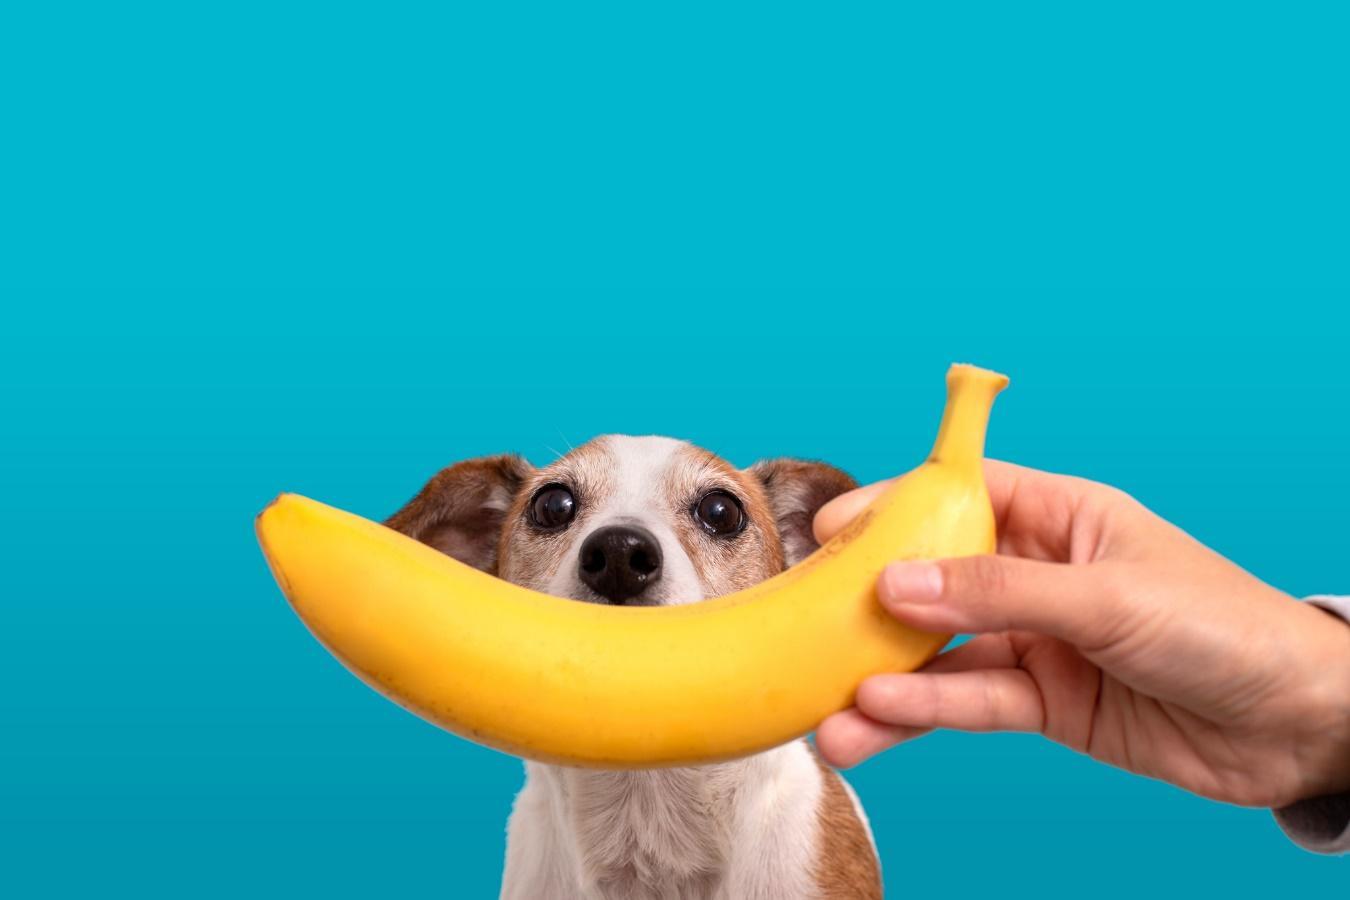 バナナを持つ人の手とその後ろからのぞき込む犬